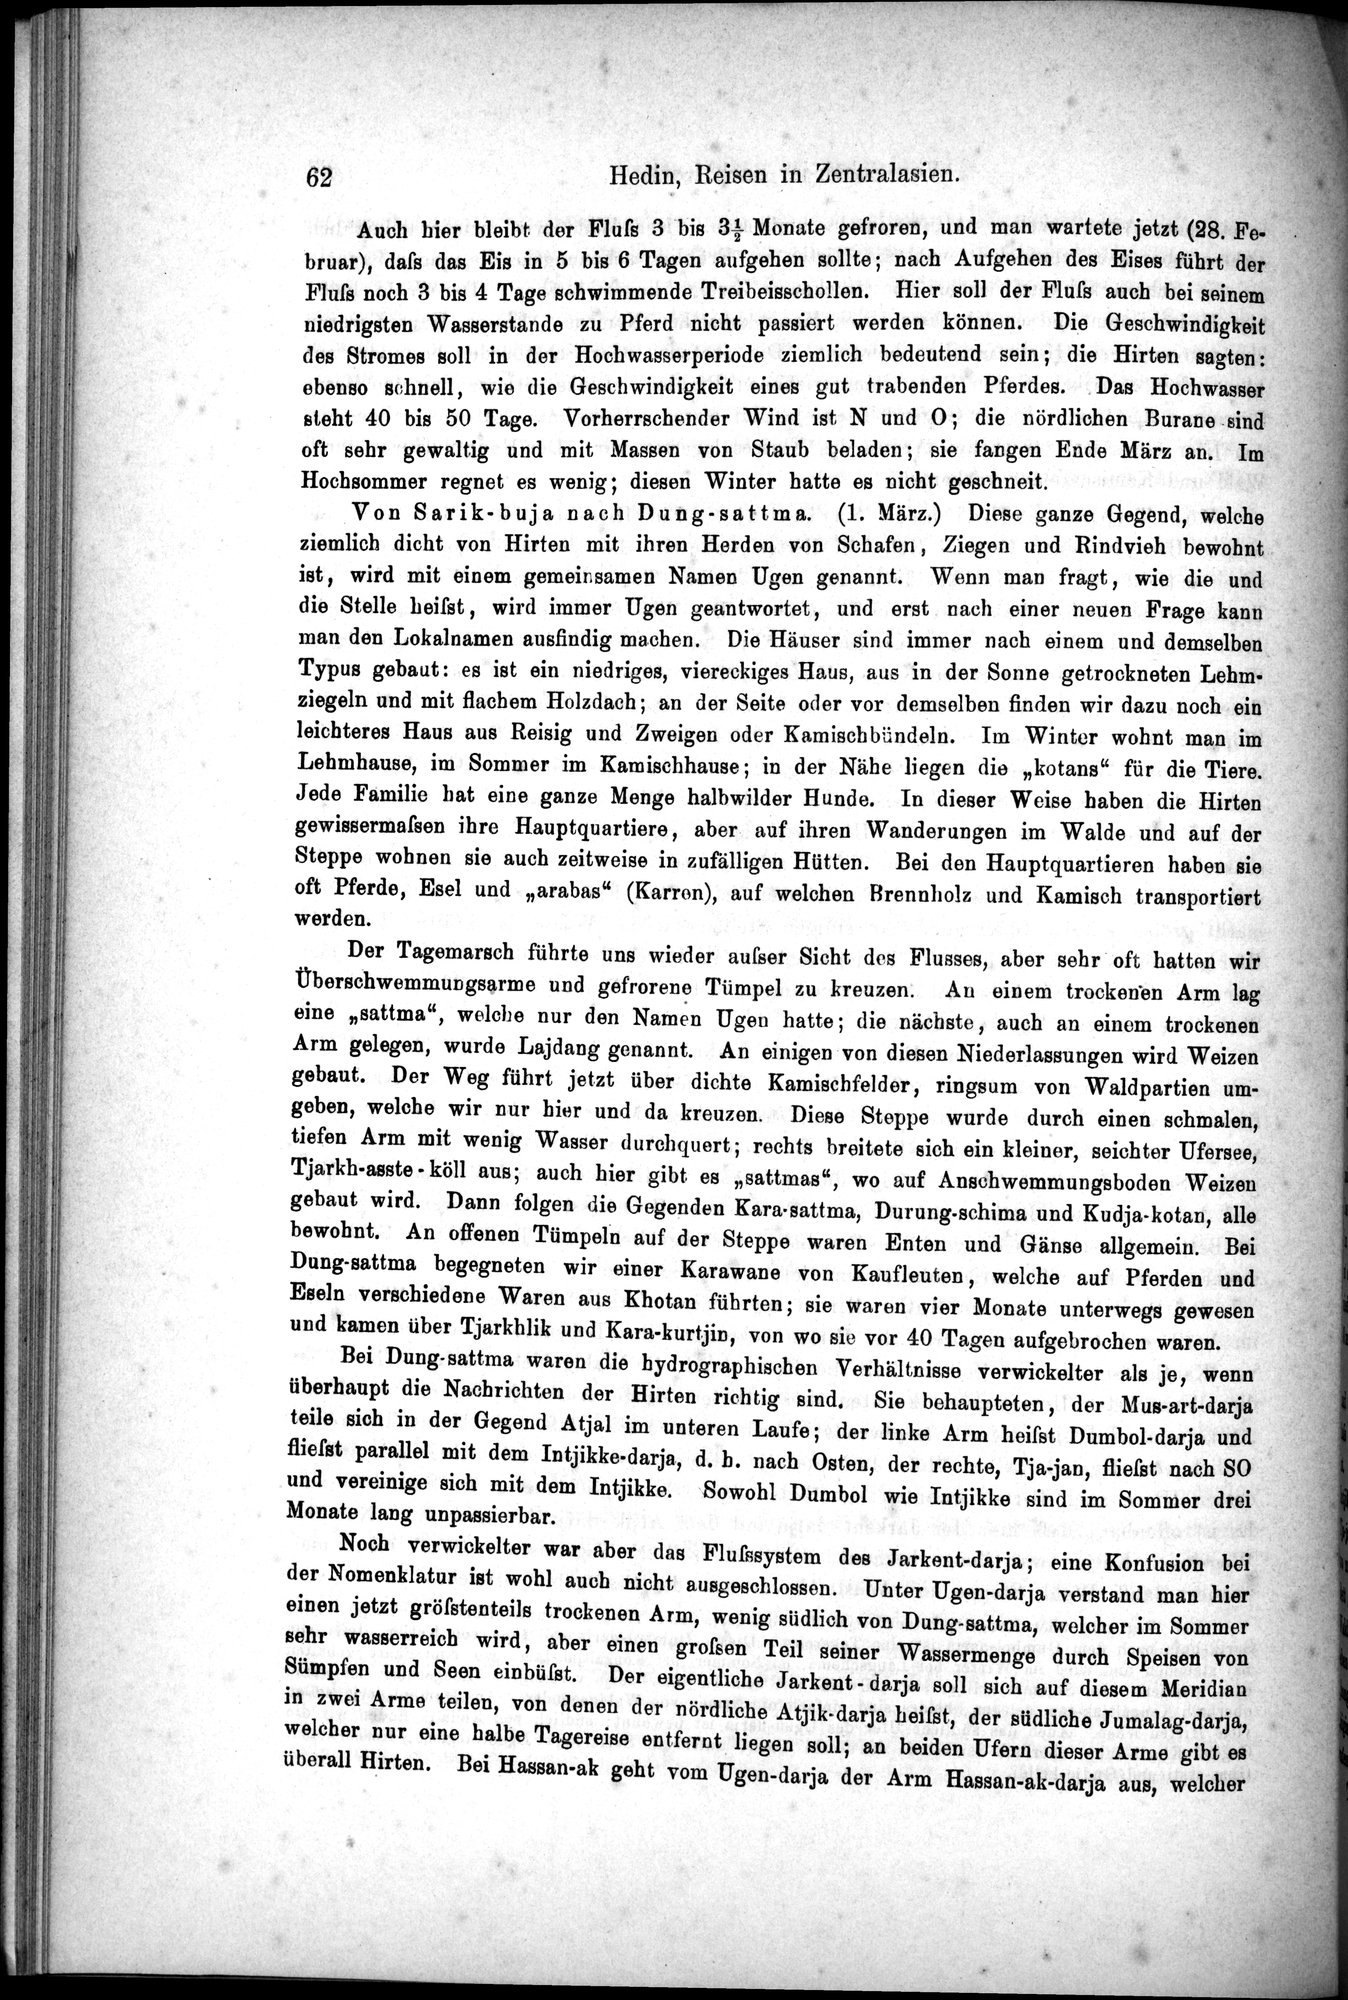 Die Geographische-Wissenschaftlichen Ergebnisse meiner Reisen in Zentralasien, 1894-1897 : vol.1 / Page 74 (Grayscale High Resolution Image)